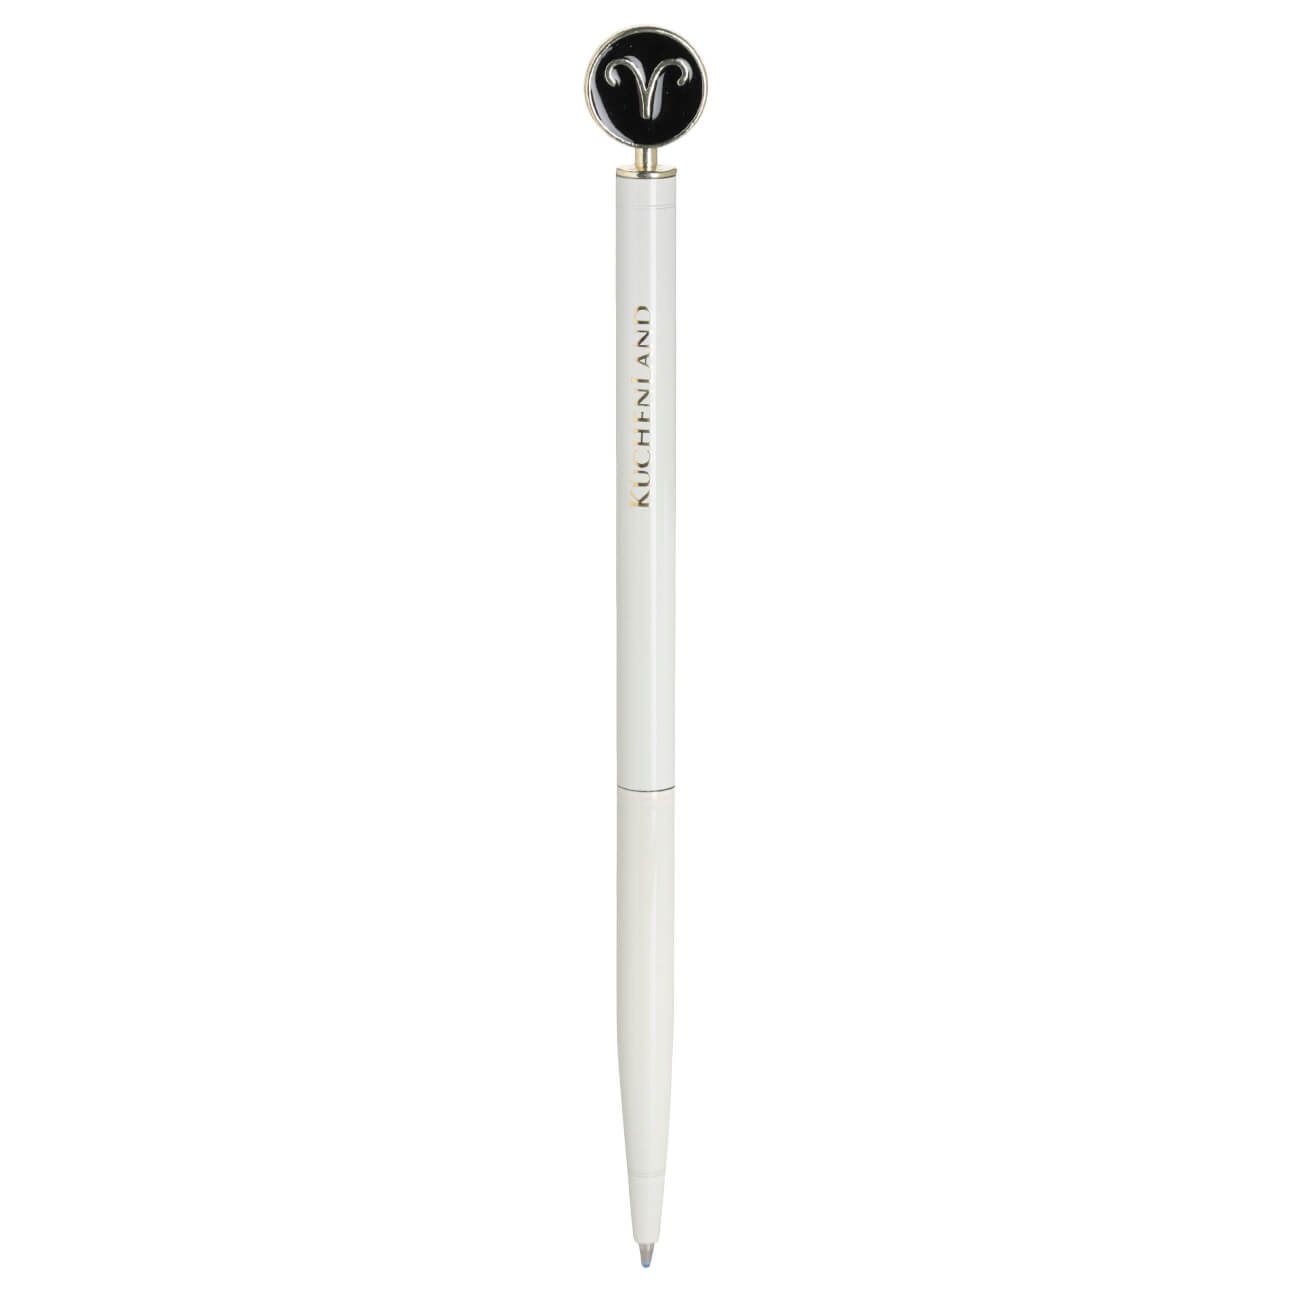 Ручка шариковая, 15 см, с фигуркой, сталь, молочно-золотистая, Овен, Zodiac ручка закладка